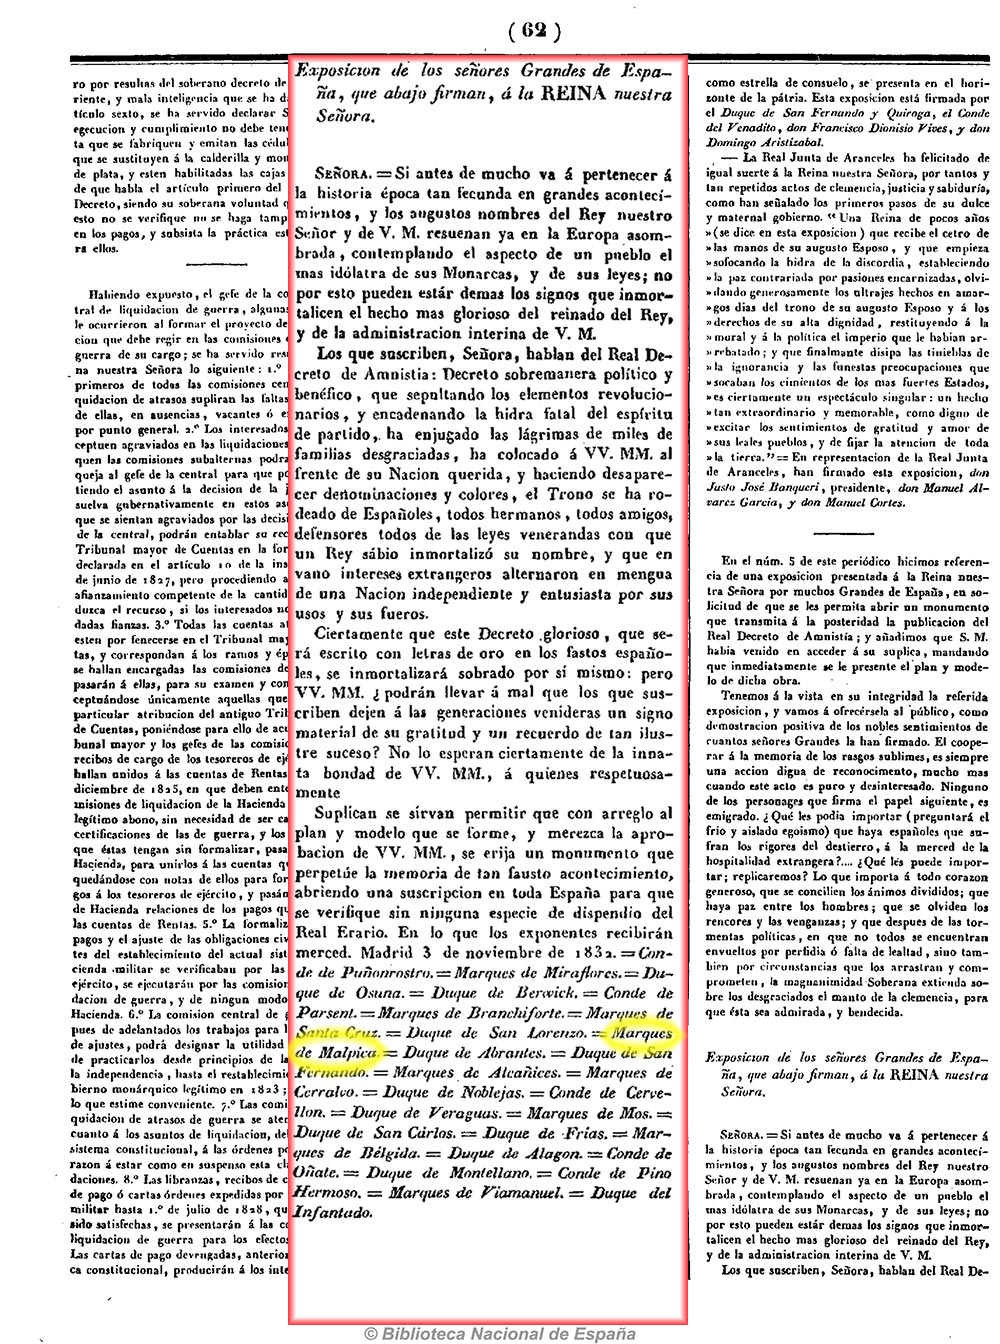 Elogio a la reina María Cristina por el decreto de amnistia. La Revista española 1/12/1832, página 6 y 7